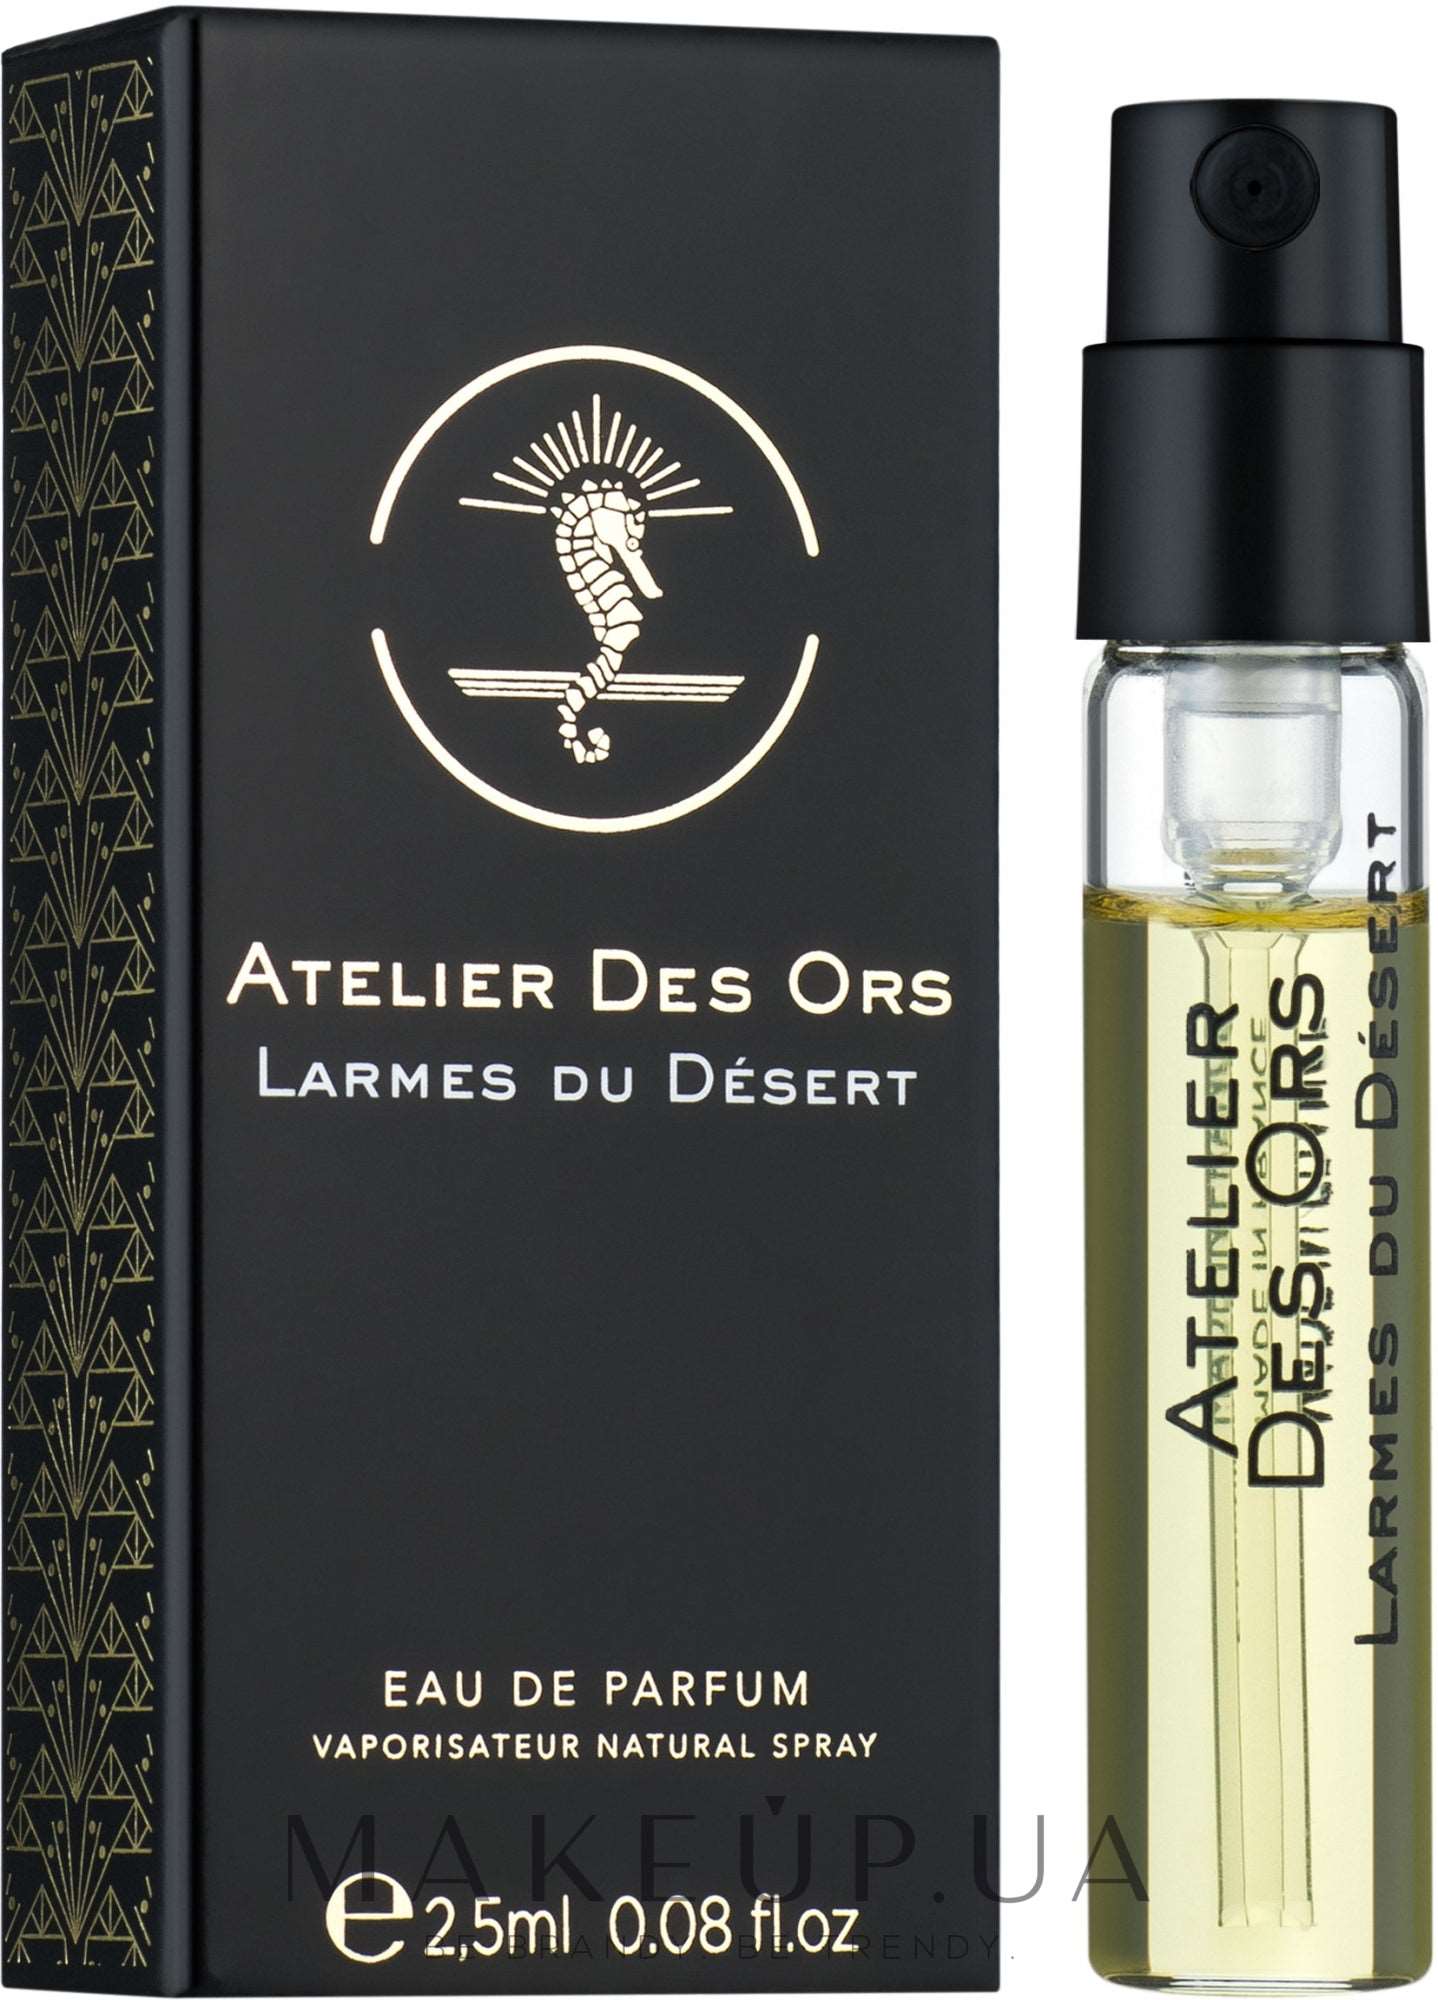 Atelier Des Ors Larmes du Desert 2.5 ml 0.08 fl. oz. Virallisia hajuvesinäytteitä